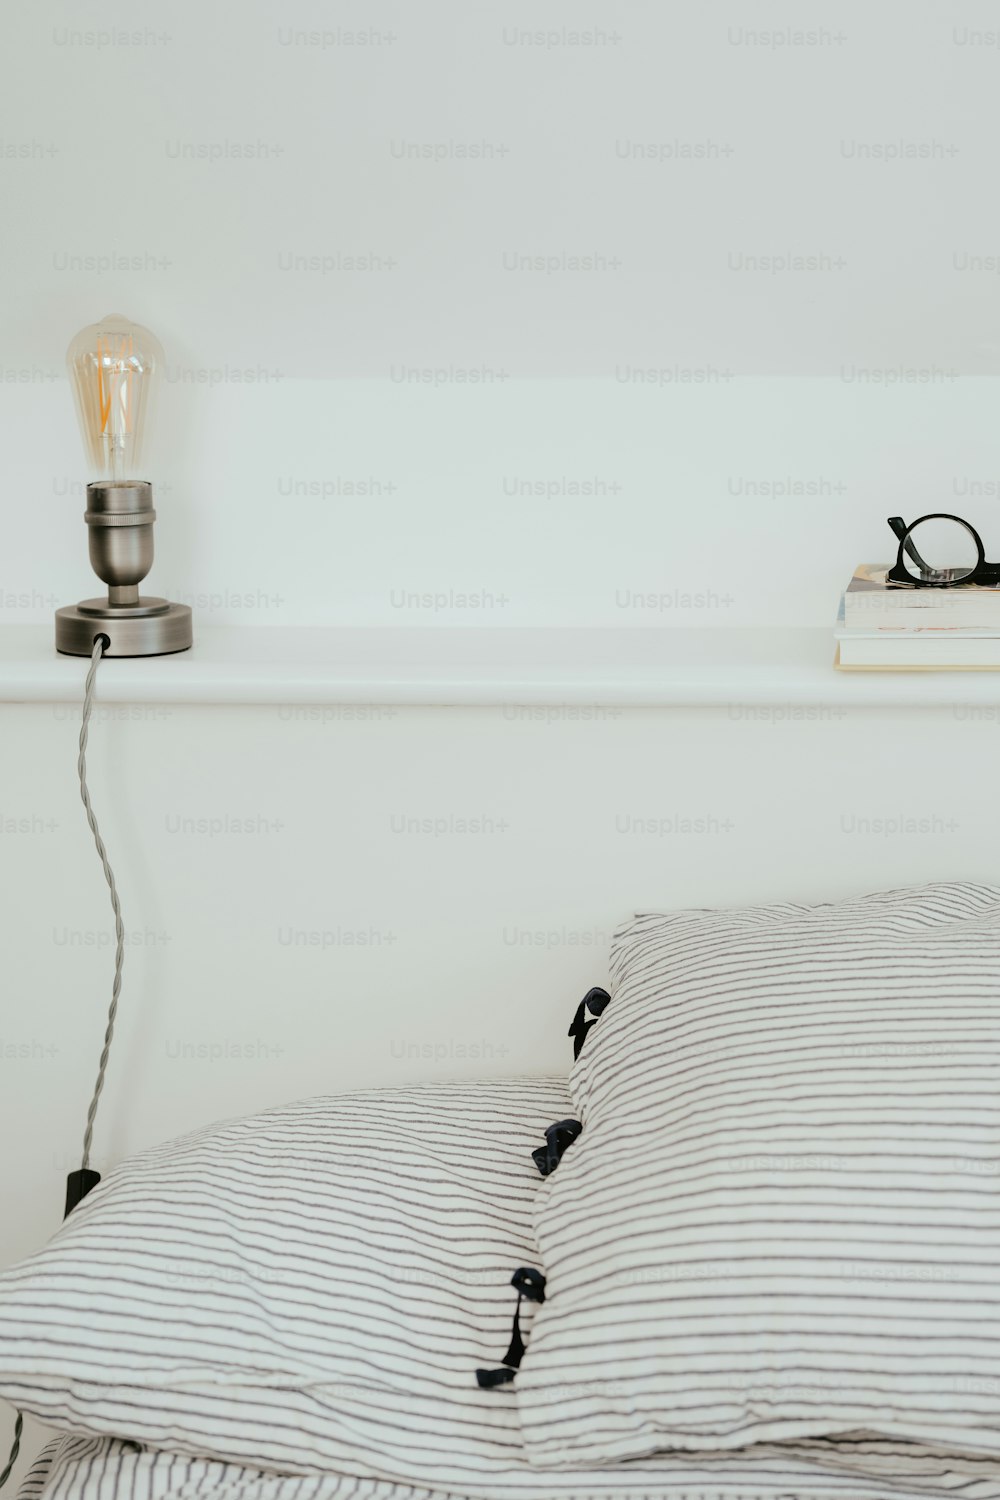 縞模様の掛け布団と電球付きのベッド